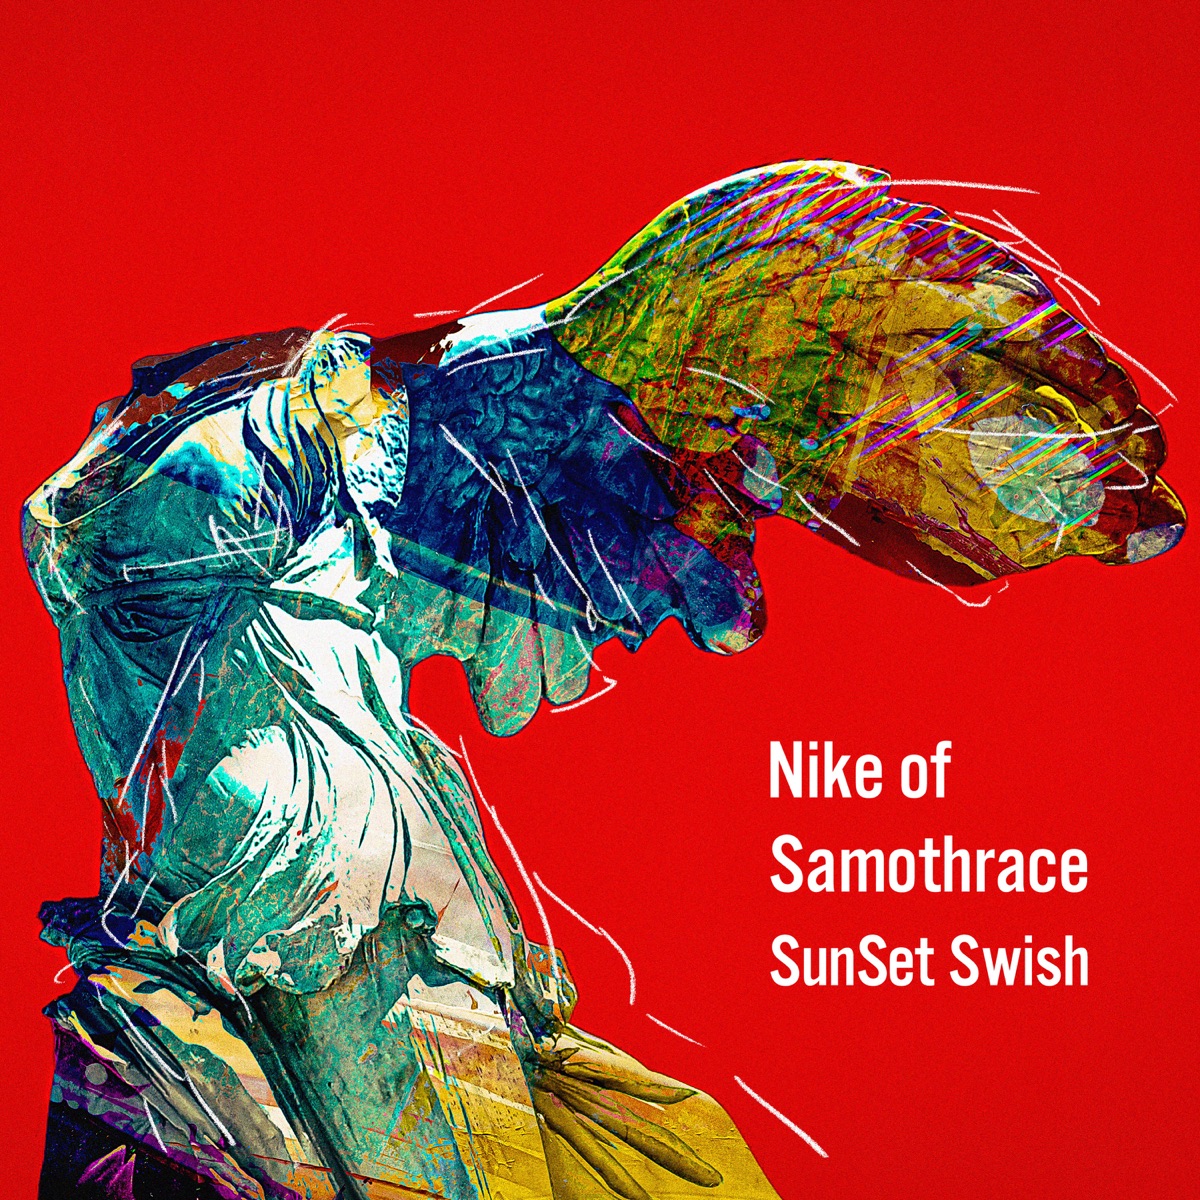 『SunSet Swish - サモトラケのニケ』収録の『サモトラケのニケ』ジャケット